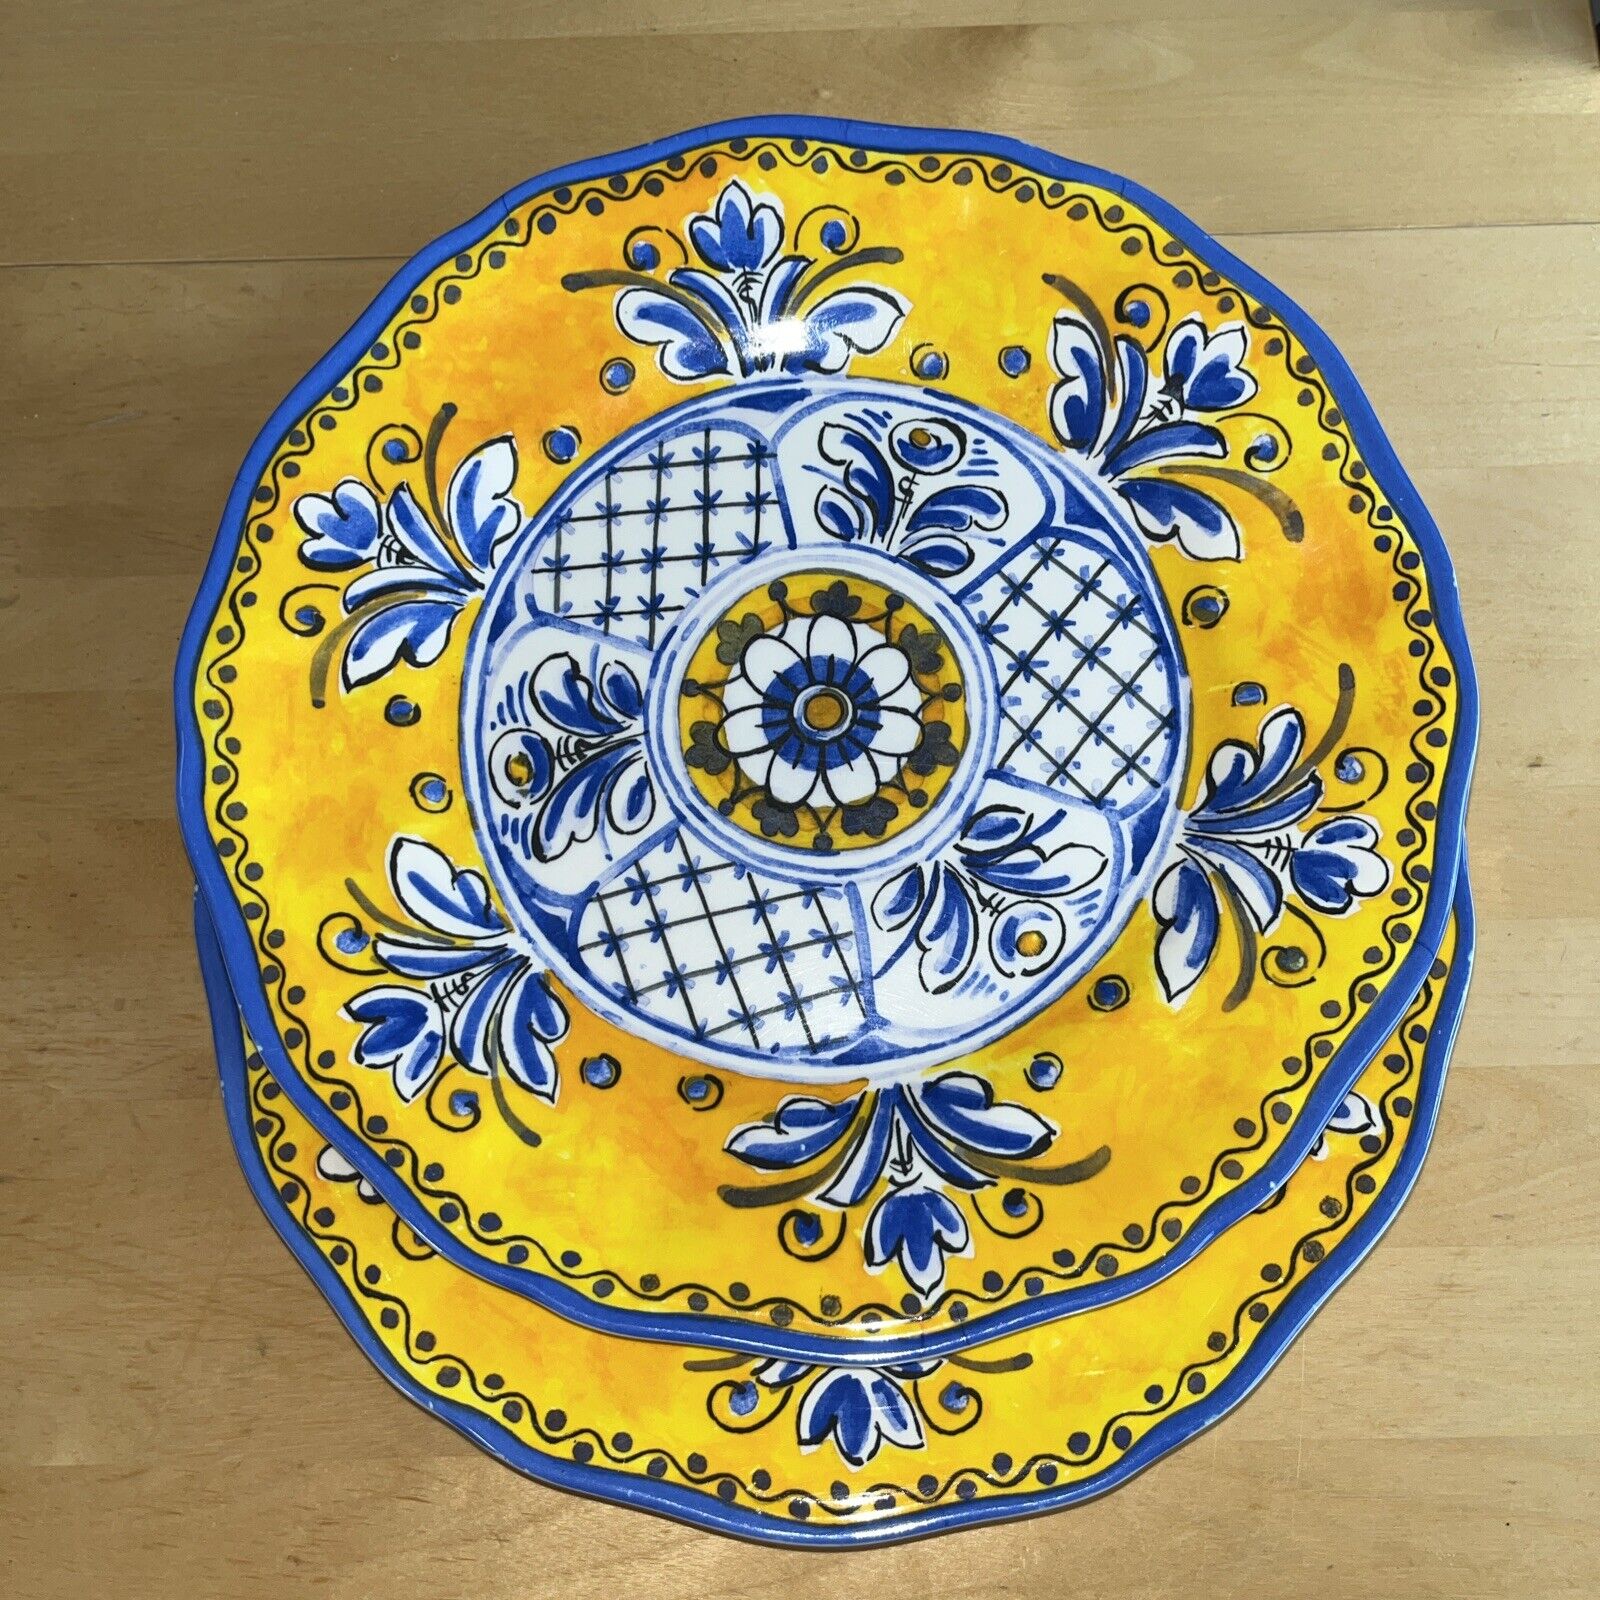 2 Le CADEAUX BENIDORM 11” Yellow & Blue dinner Plates